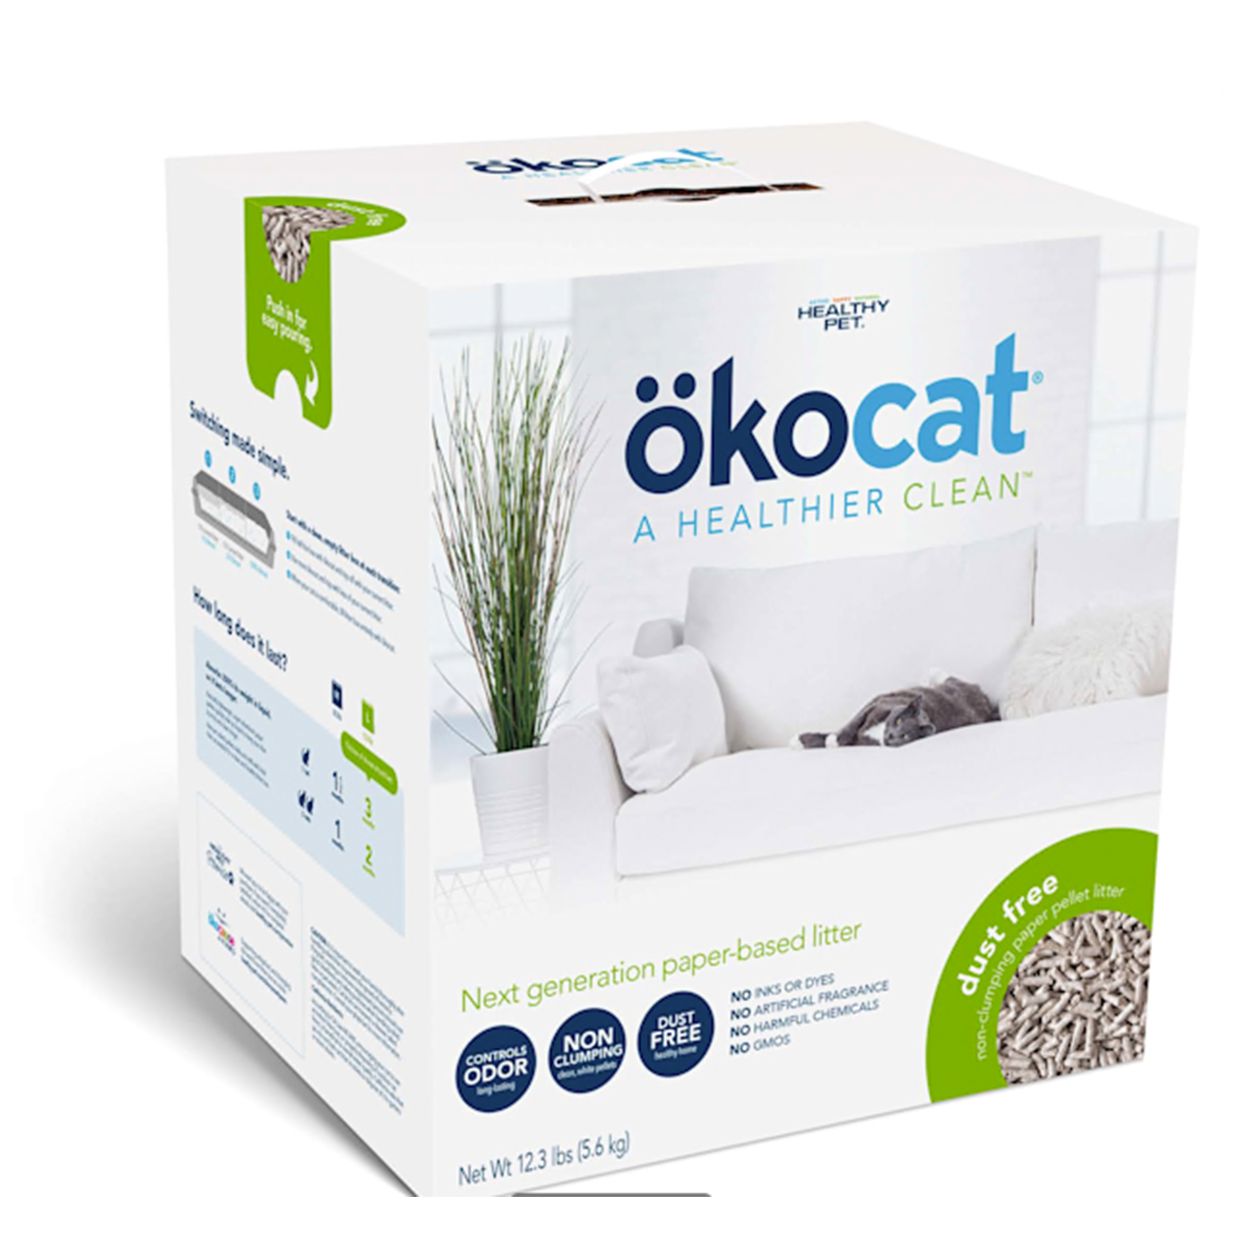 okocat dust free cat litter